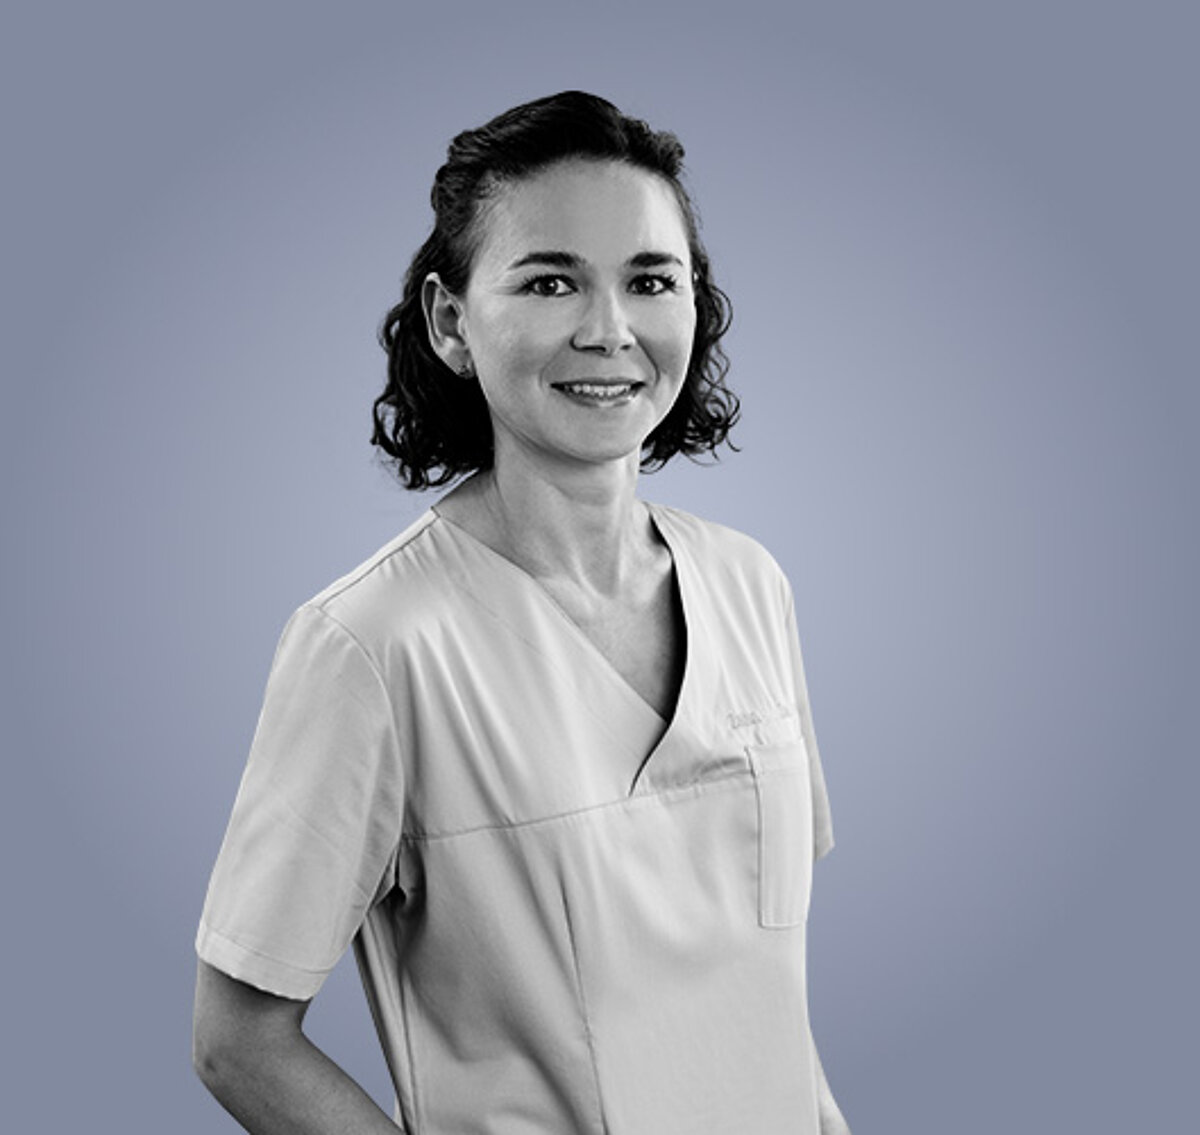 Marina, zahnärztliche Mitarbeiterin in der Zahnarztpraxis zahnpluszähnchen in Nürnberg